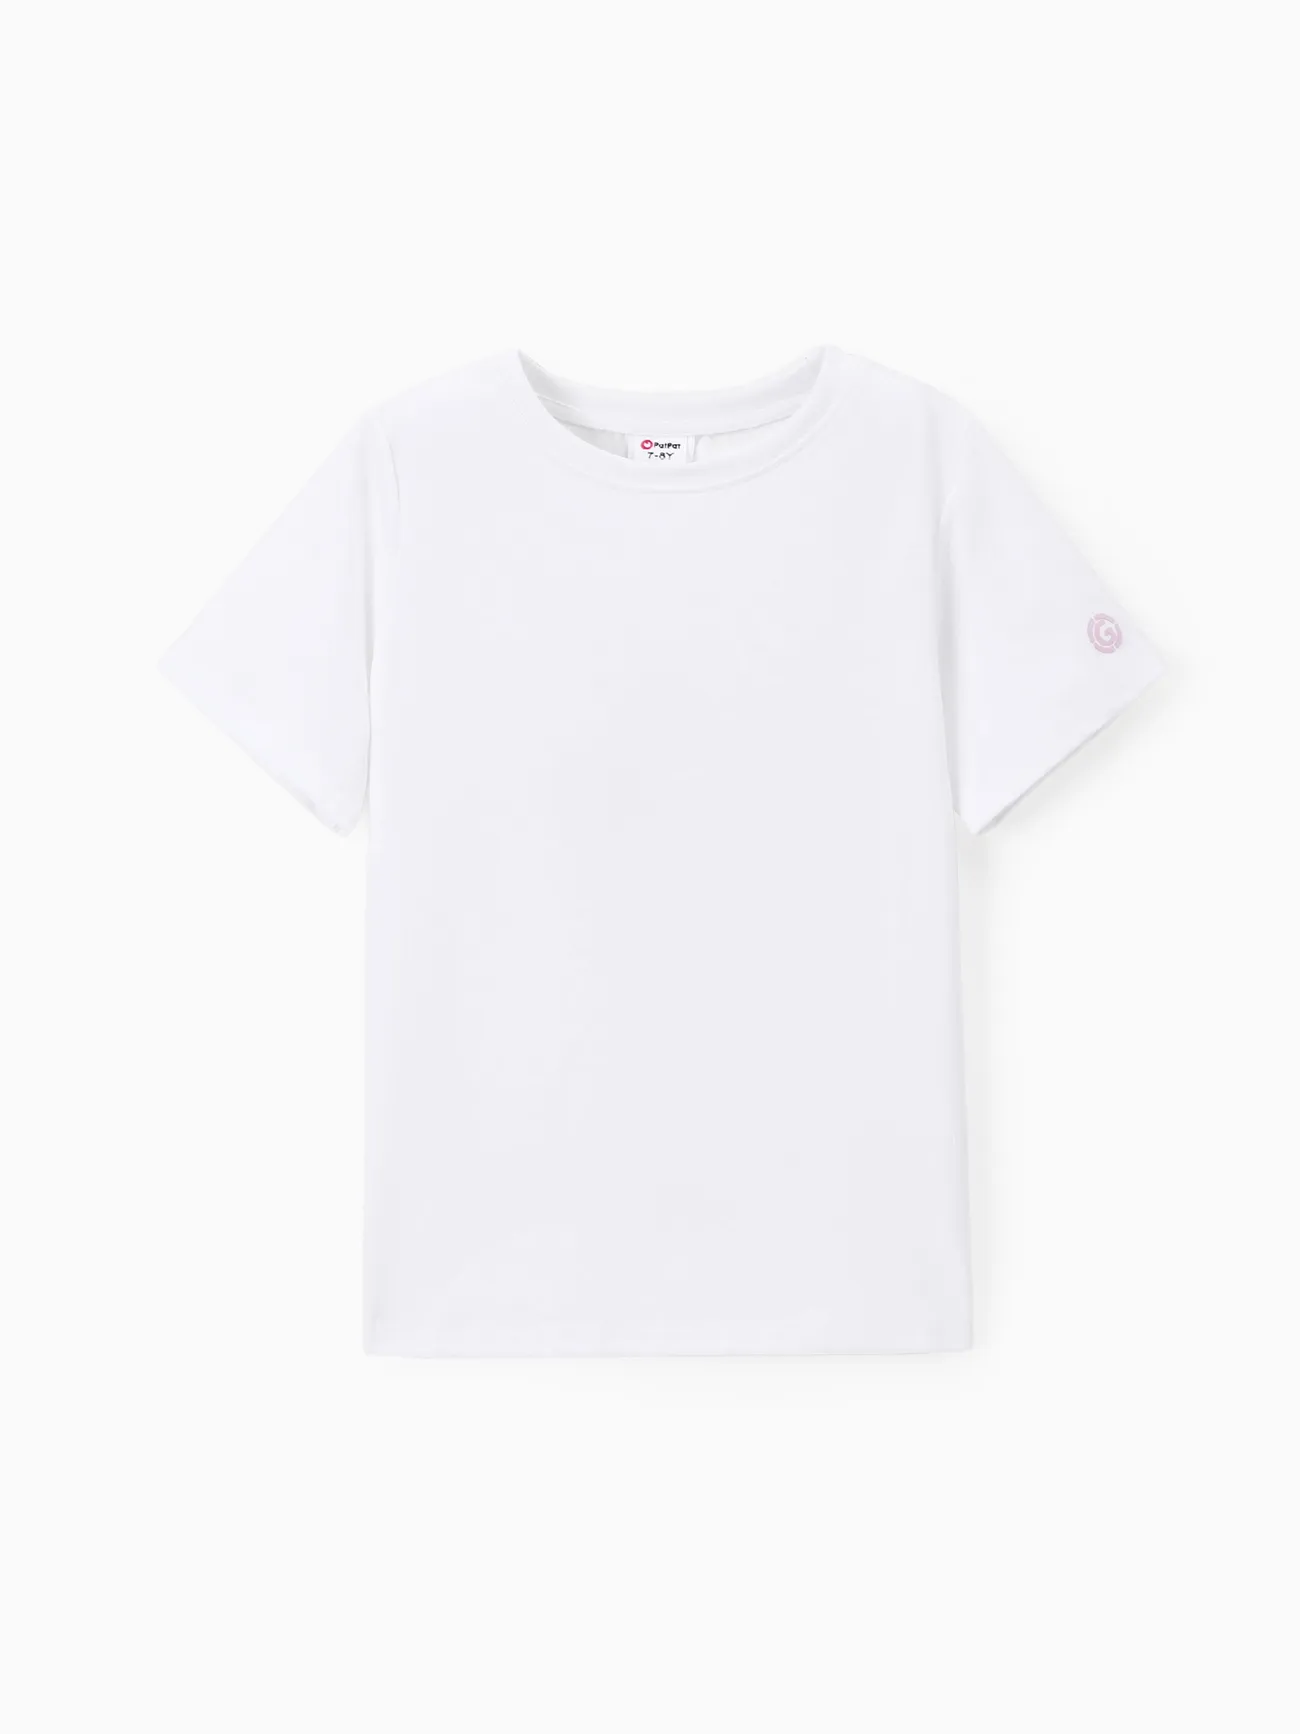 Go-Neat repelente de água e camisetas resistentes a manchas para crianças Branco big image 1